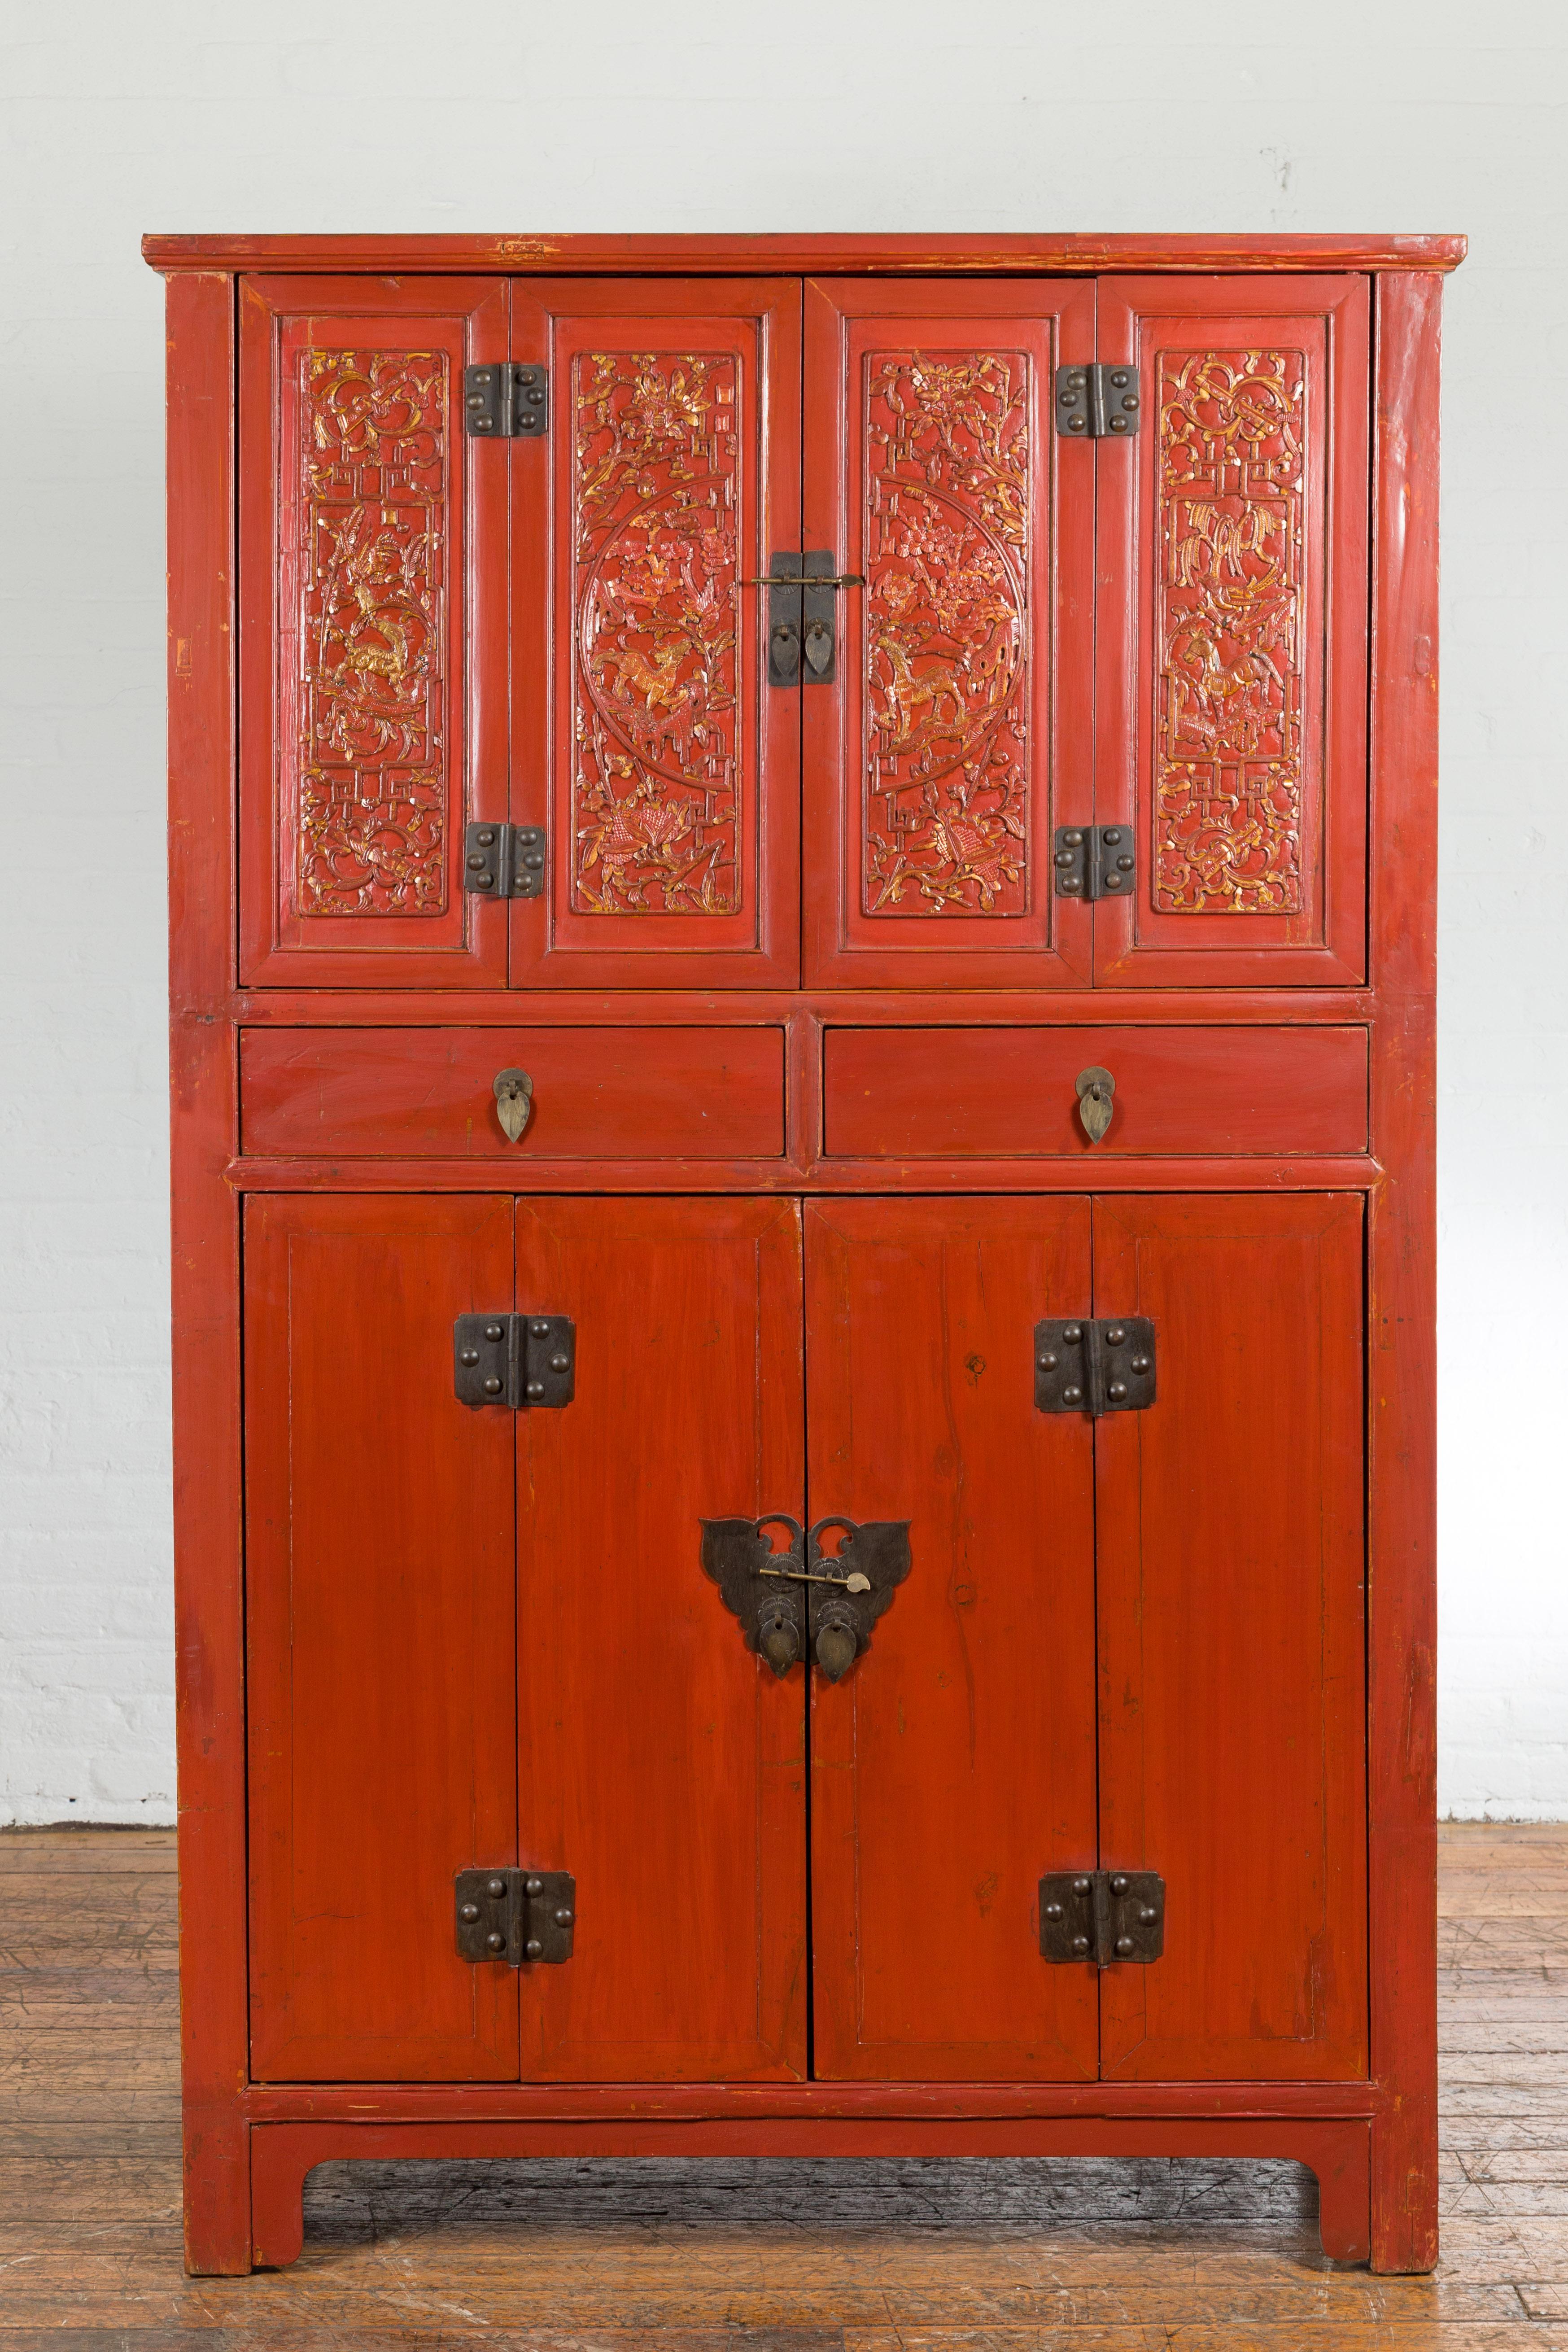 Cabinet chinois en laque rouge de la fin de la dynastie Qing, datant du début du 20e siècle, avec des ferrures en forme de papillon, deux tiroirs, quatre portes, décor sculpté et doré. Créée en Chine à la fin de la dynastie Qing, au début du XXe